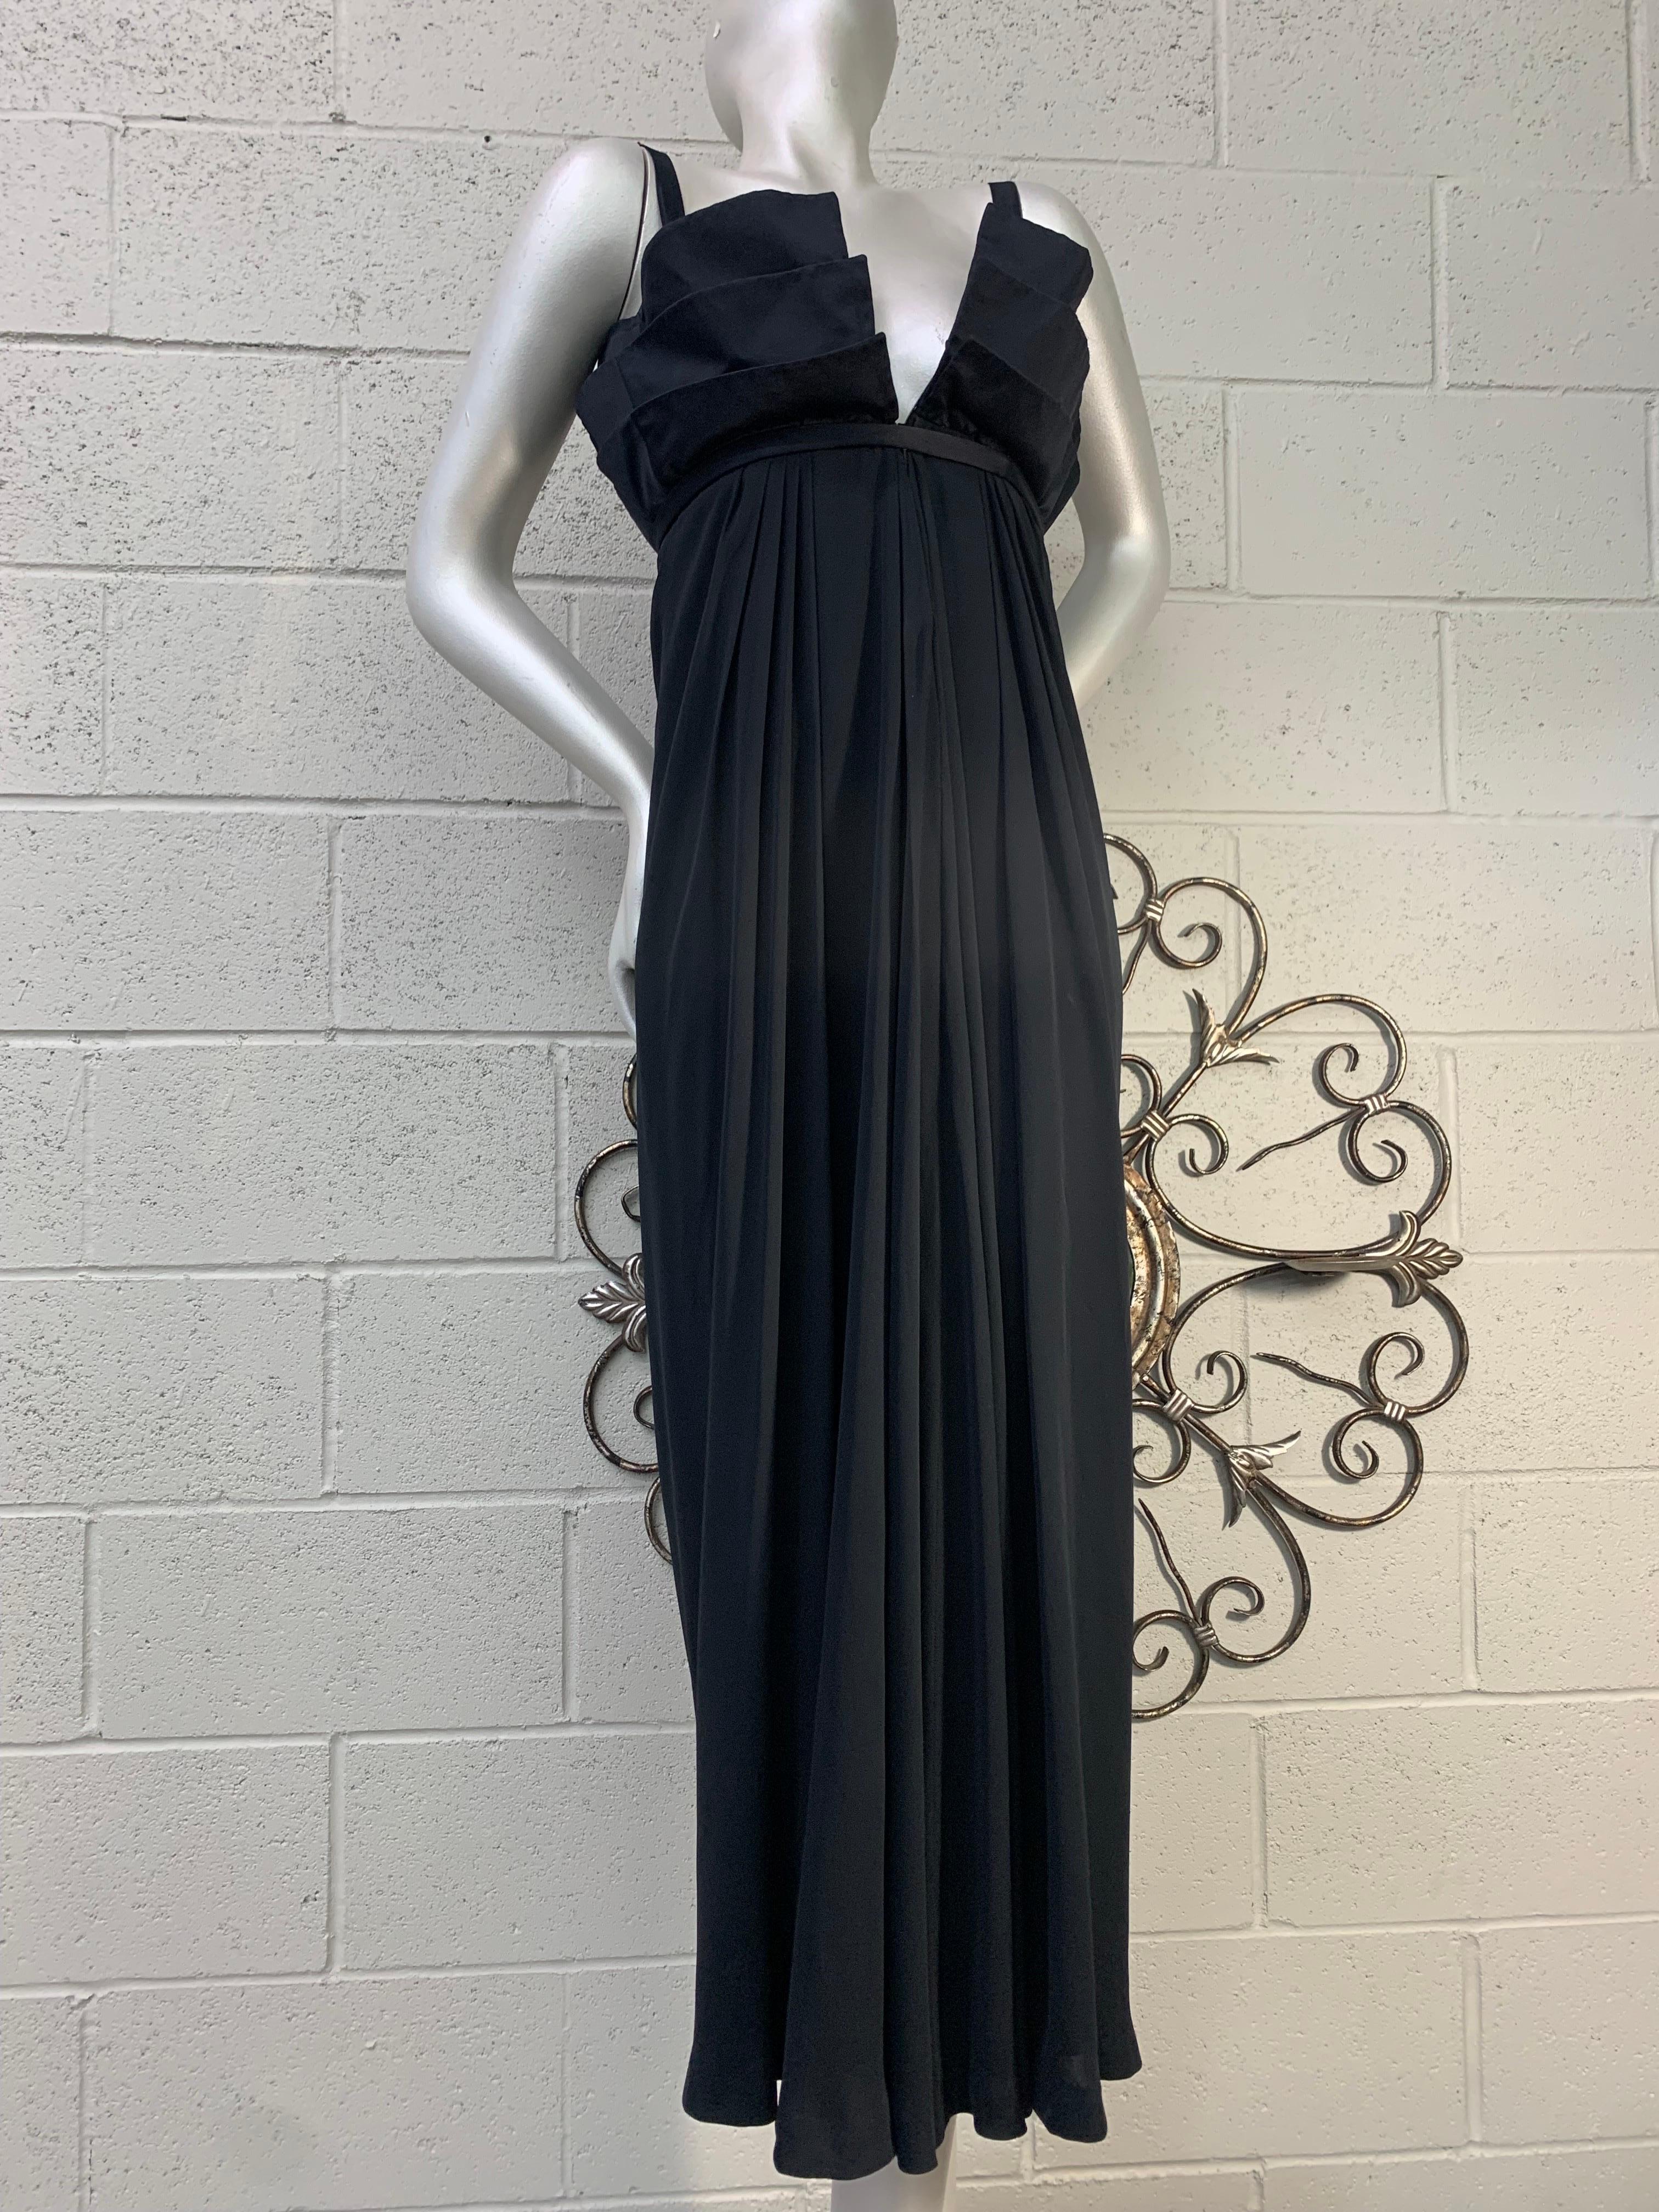 1970 Roberto Capucci Black Silk Empire Gown w Multi-Layered Structured Bodice For Sale 8